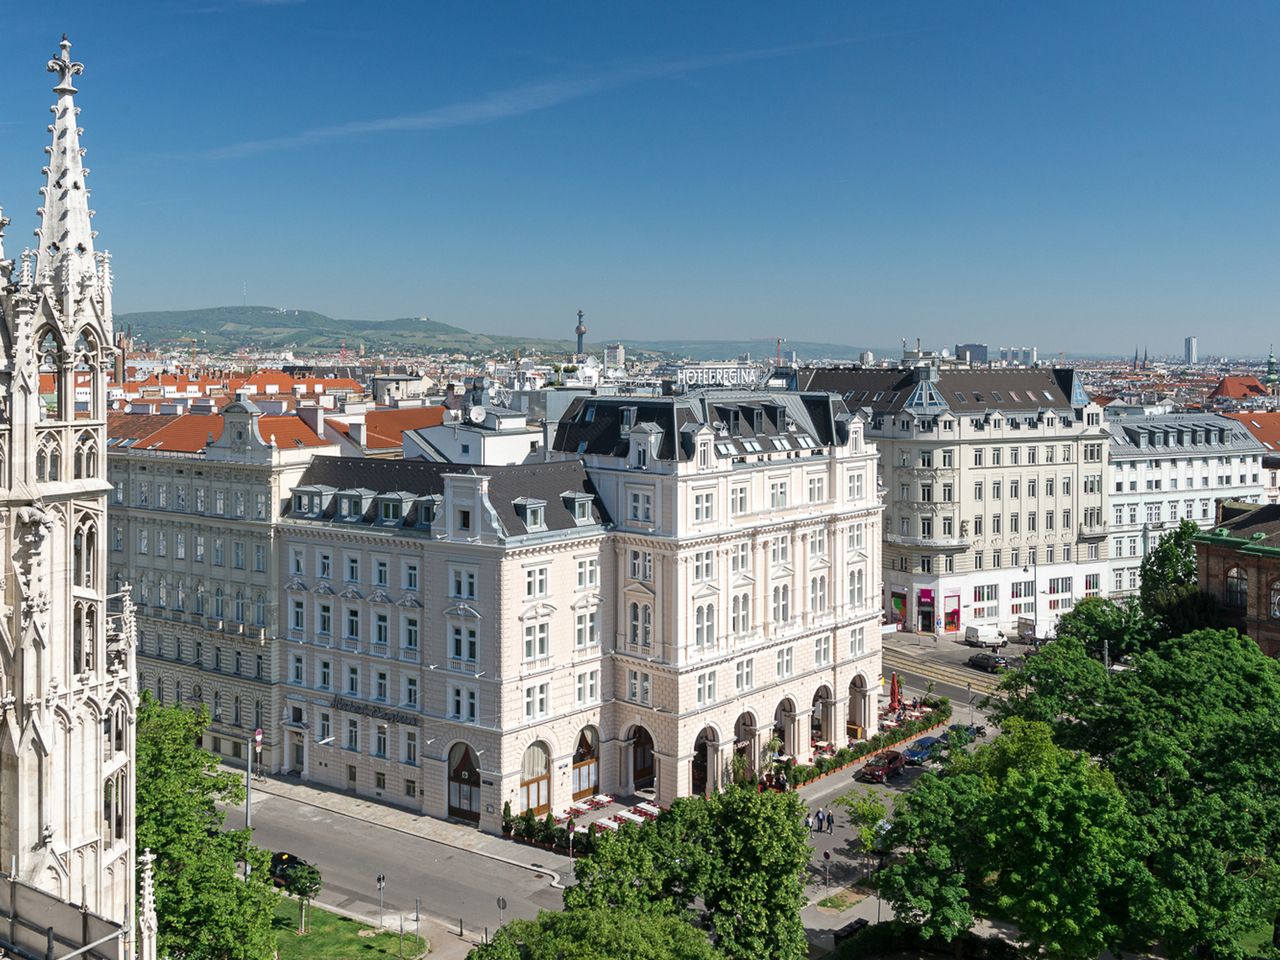 Das wunderschöne Wien erleben - 4 Tage